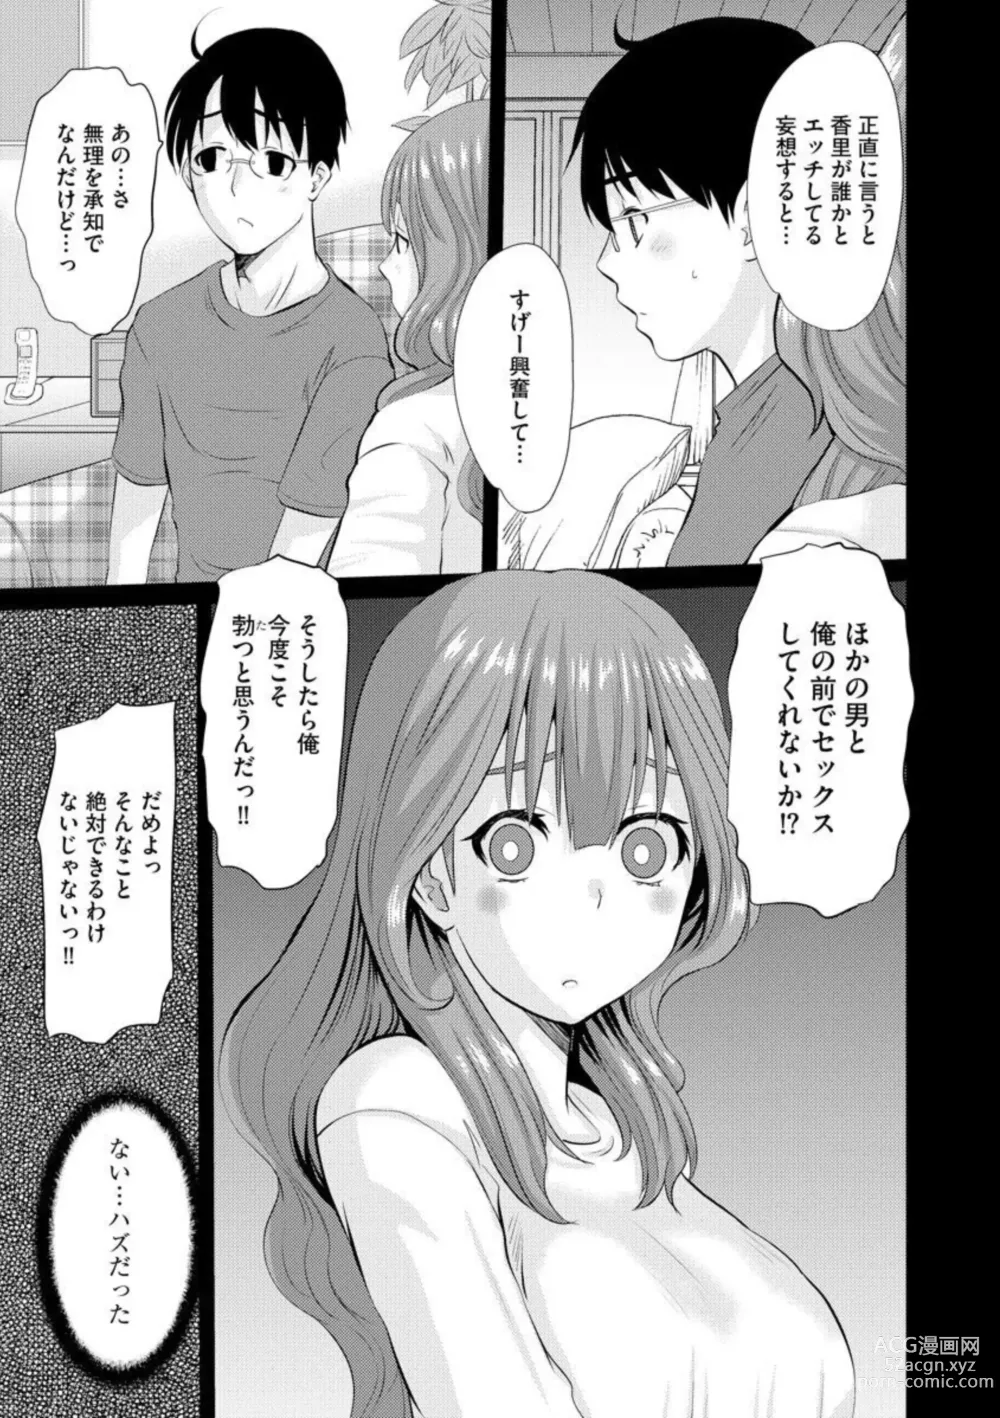 Page 5 of manga Netorare Okusama no Shin Taiken 1